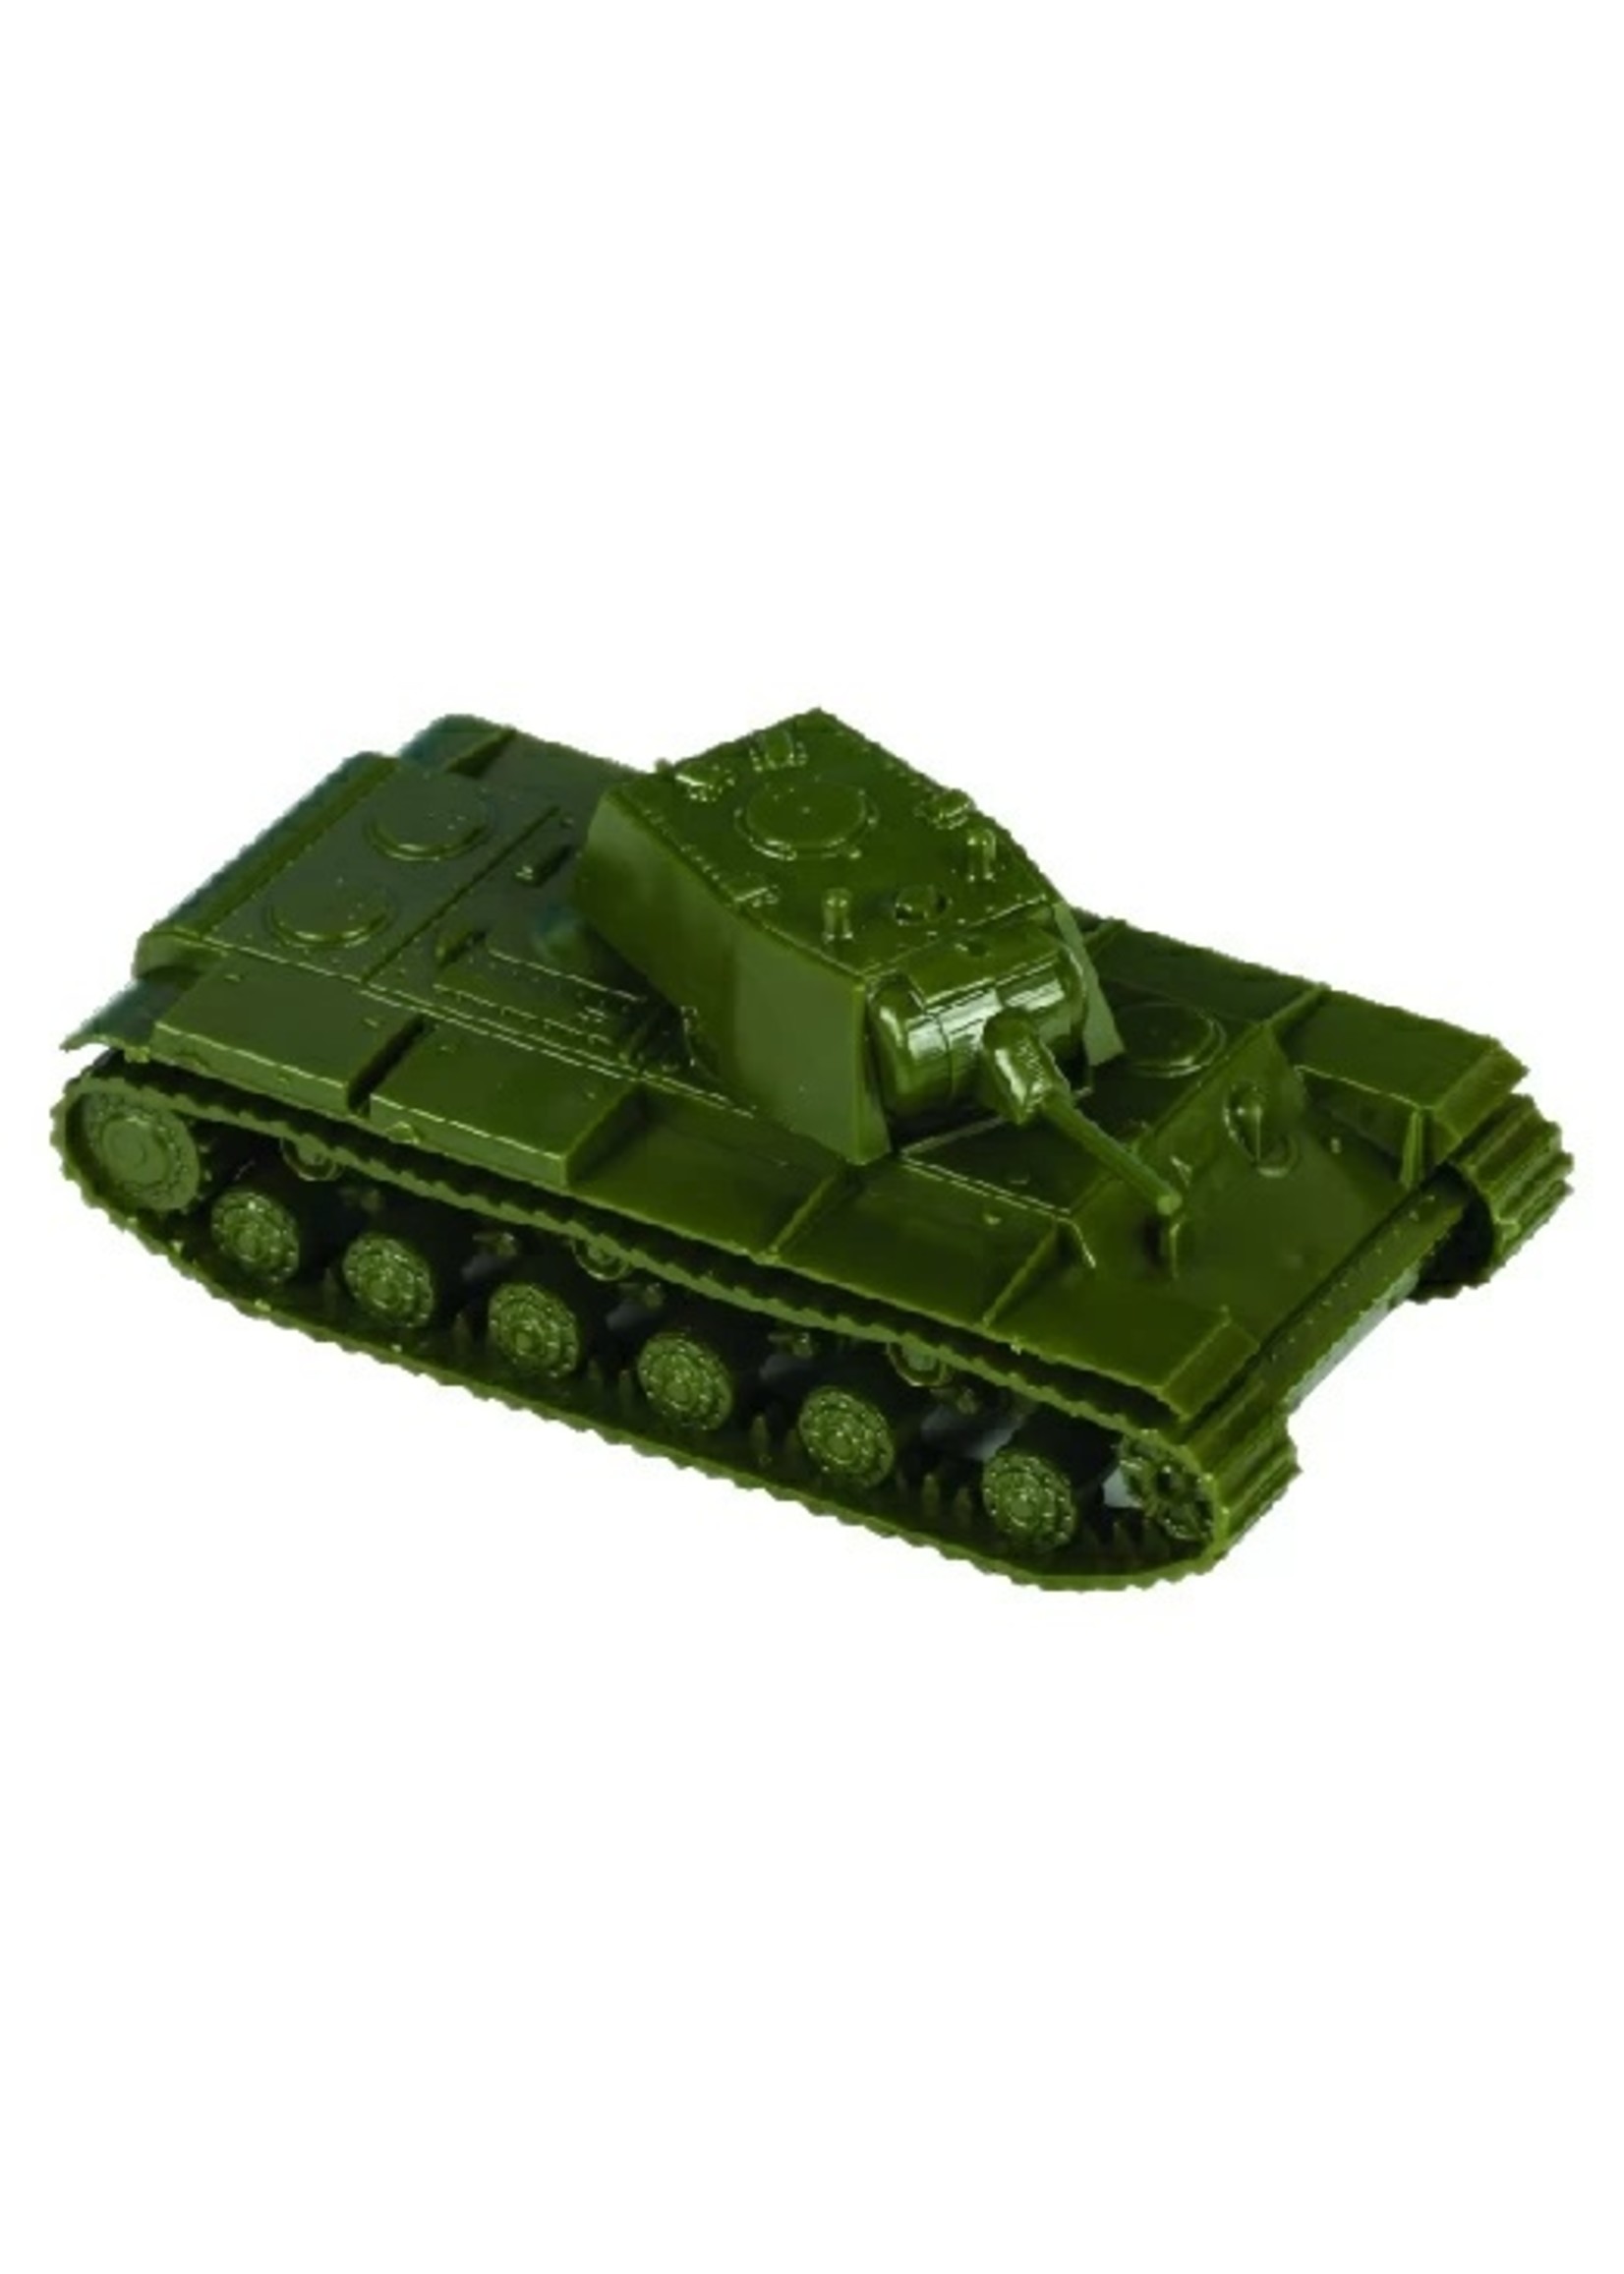 Zvezda 6141 - 1/100 Soviet KV-1 Mod 1940 Heavy Tank